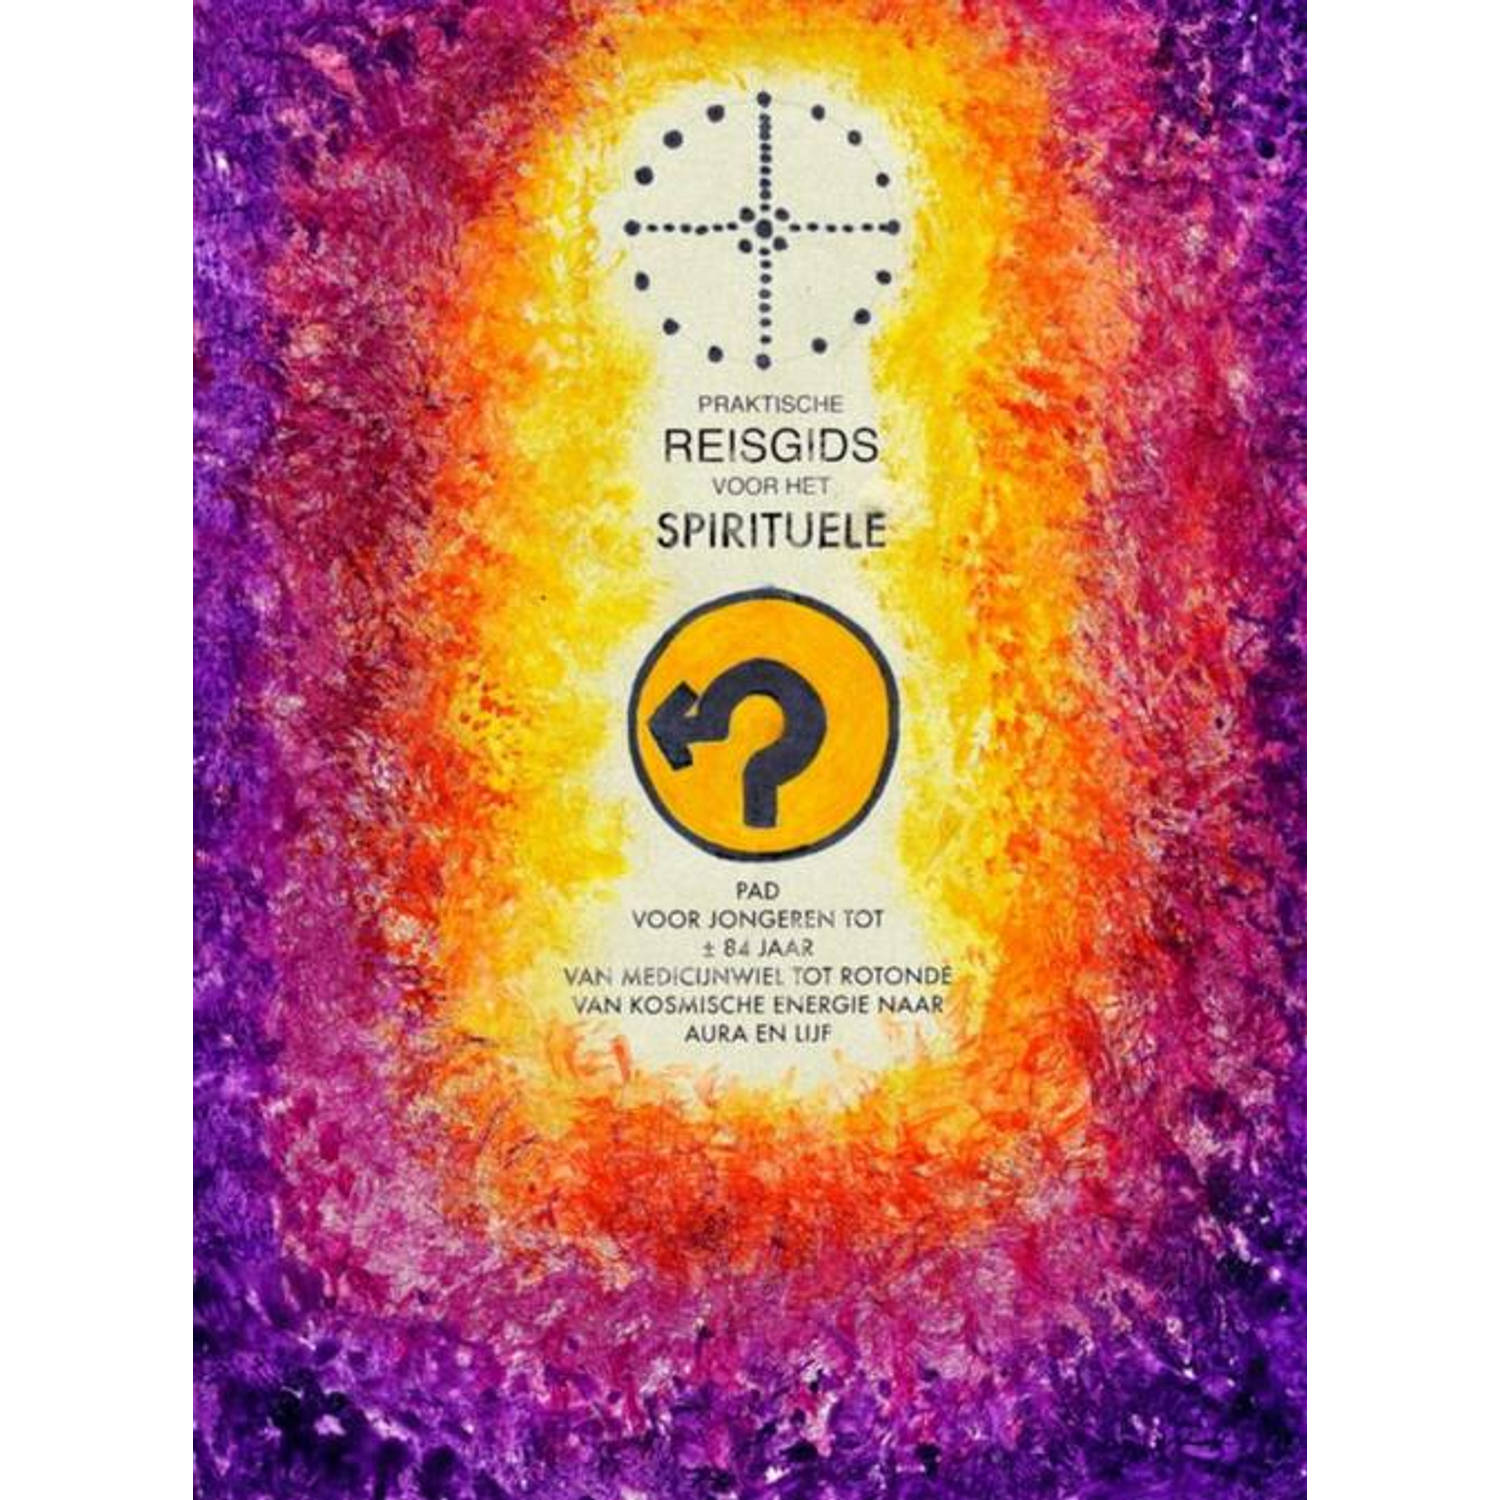 Praktische reisgids voor het spirituele pad. voor jongeren tot Â± 84 jaar,van medicijnwiel tot roton